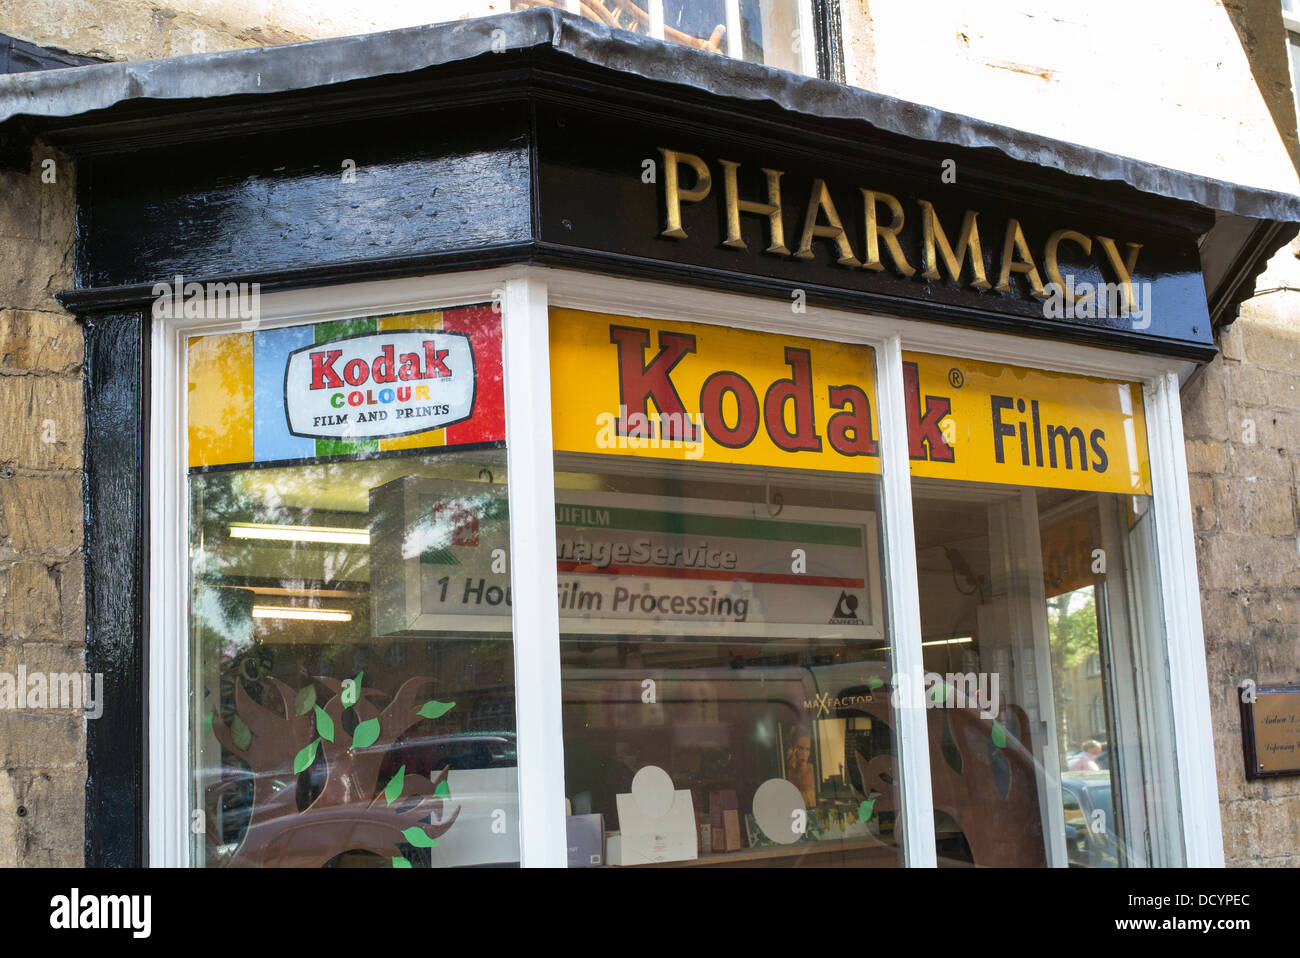 Alte Werbung für Kodak Filme in einem Fenster der Apotheke. Moreton in Marsh, Cotswolds, Gloucestershire, England Stockfoto